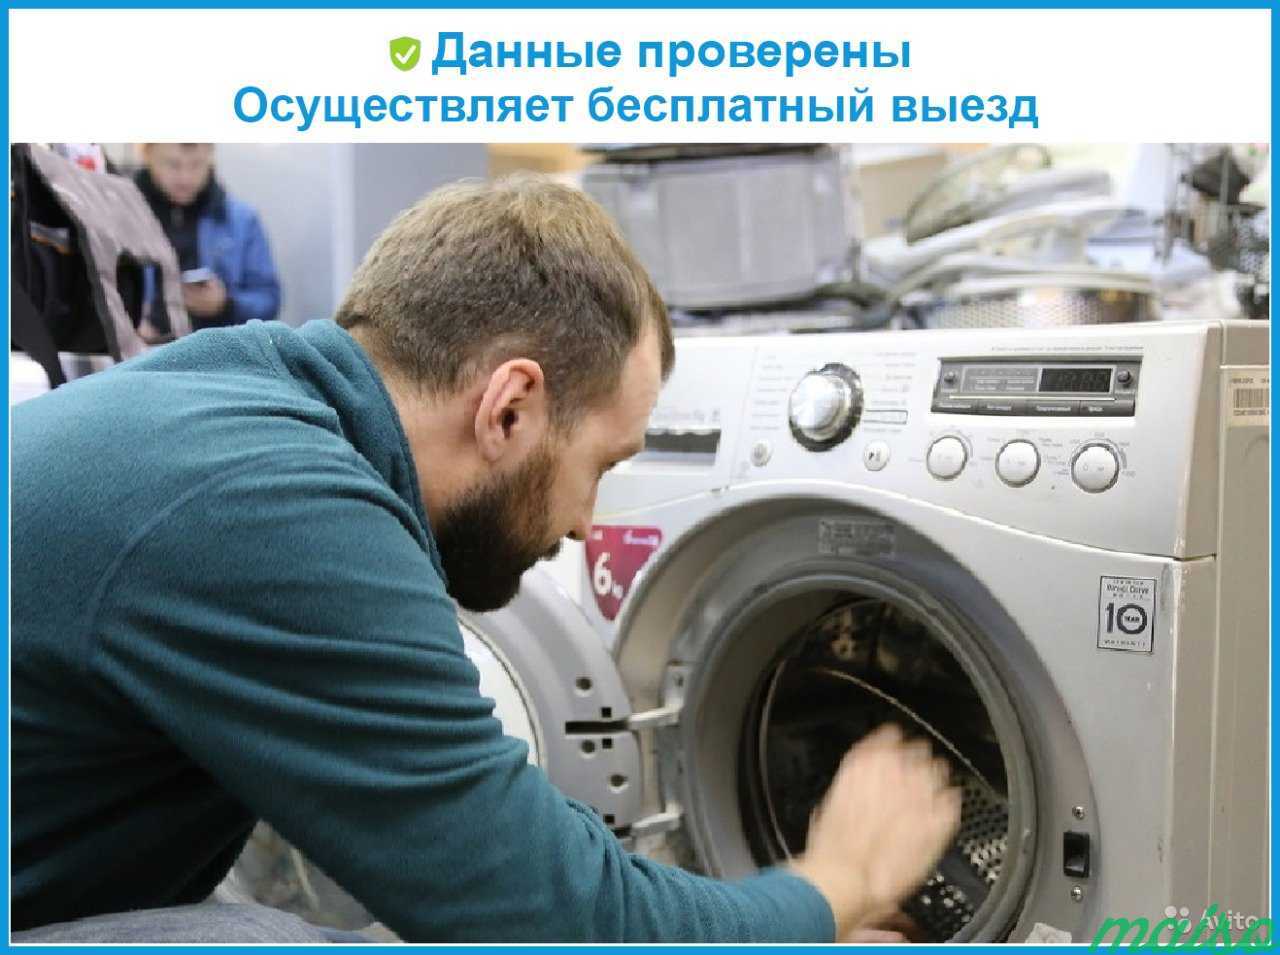 Сервисный ремонт стиральных машин в москве. Мастер стиральной машинки. Мастер по ремонту стиральных машин. Ремонт стиральных машин. Ремонтопригодные Стиральные машинки.